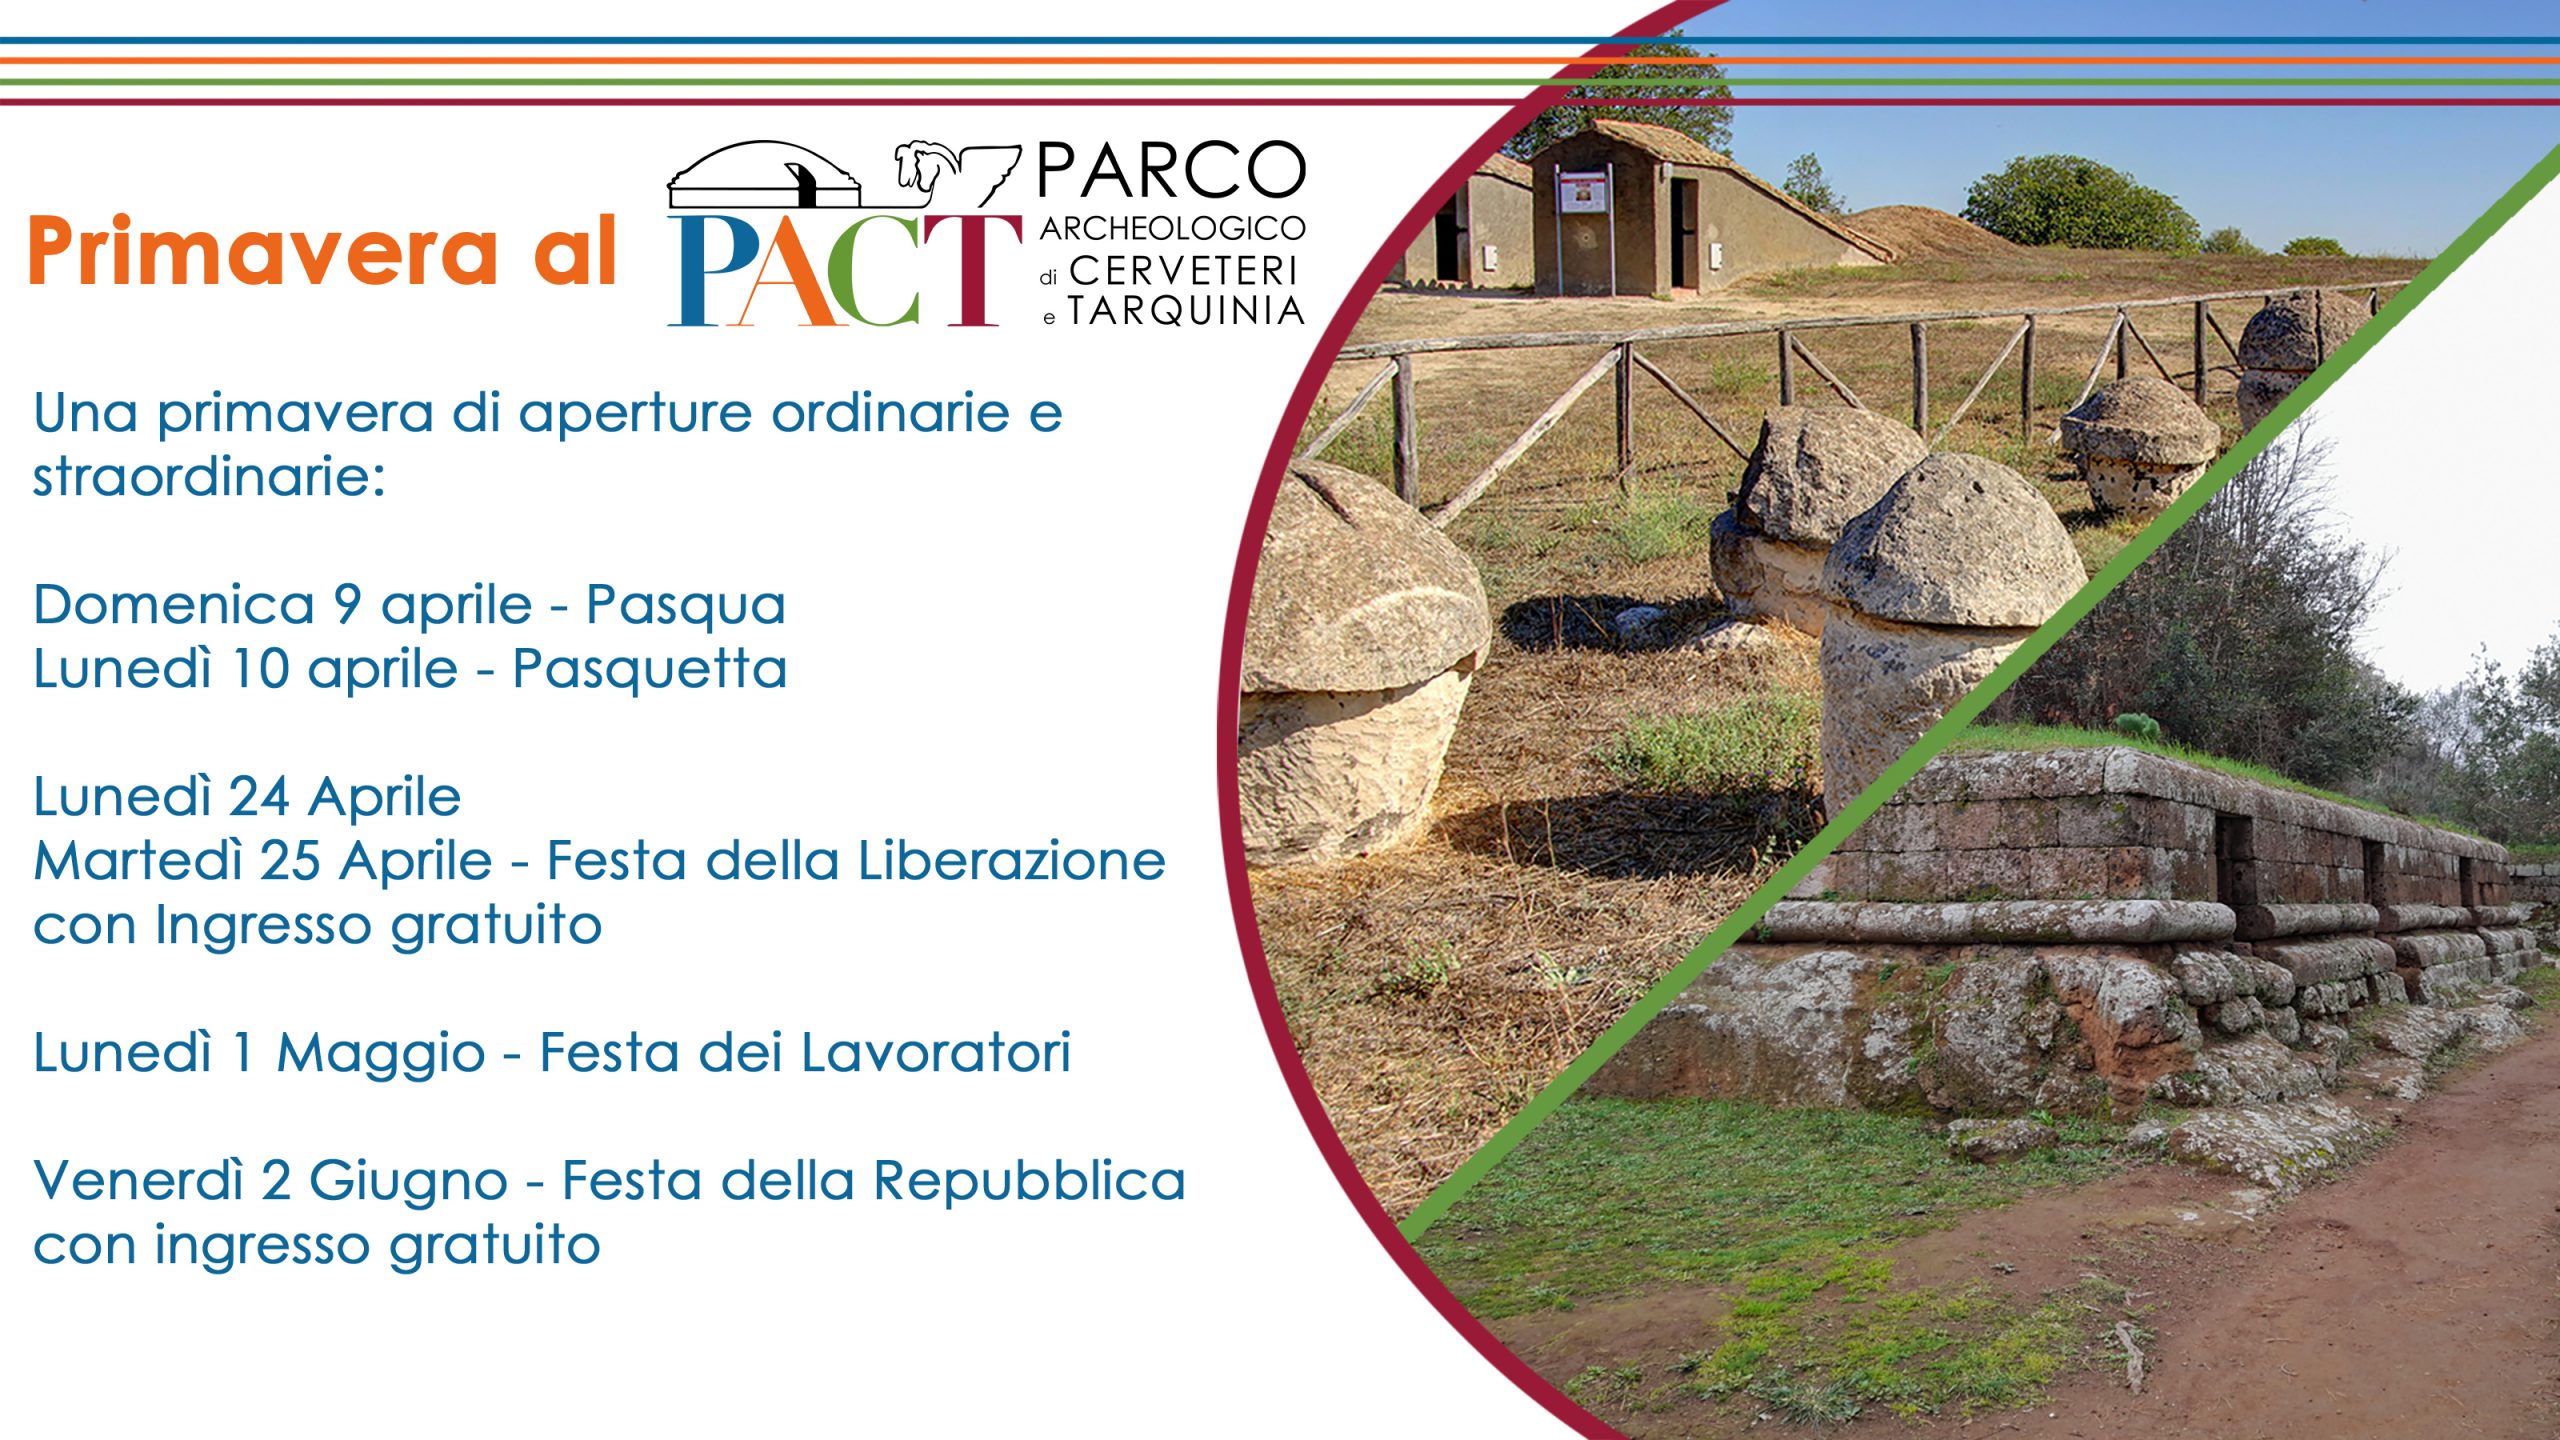 Al momento stai visualizzando Primavera al PACT – Parco Archeologico di Cerveteri e Tarquinia